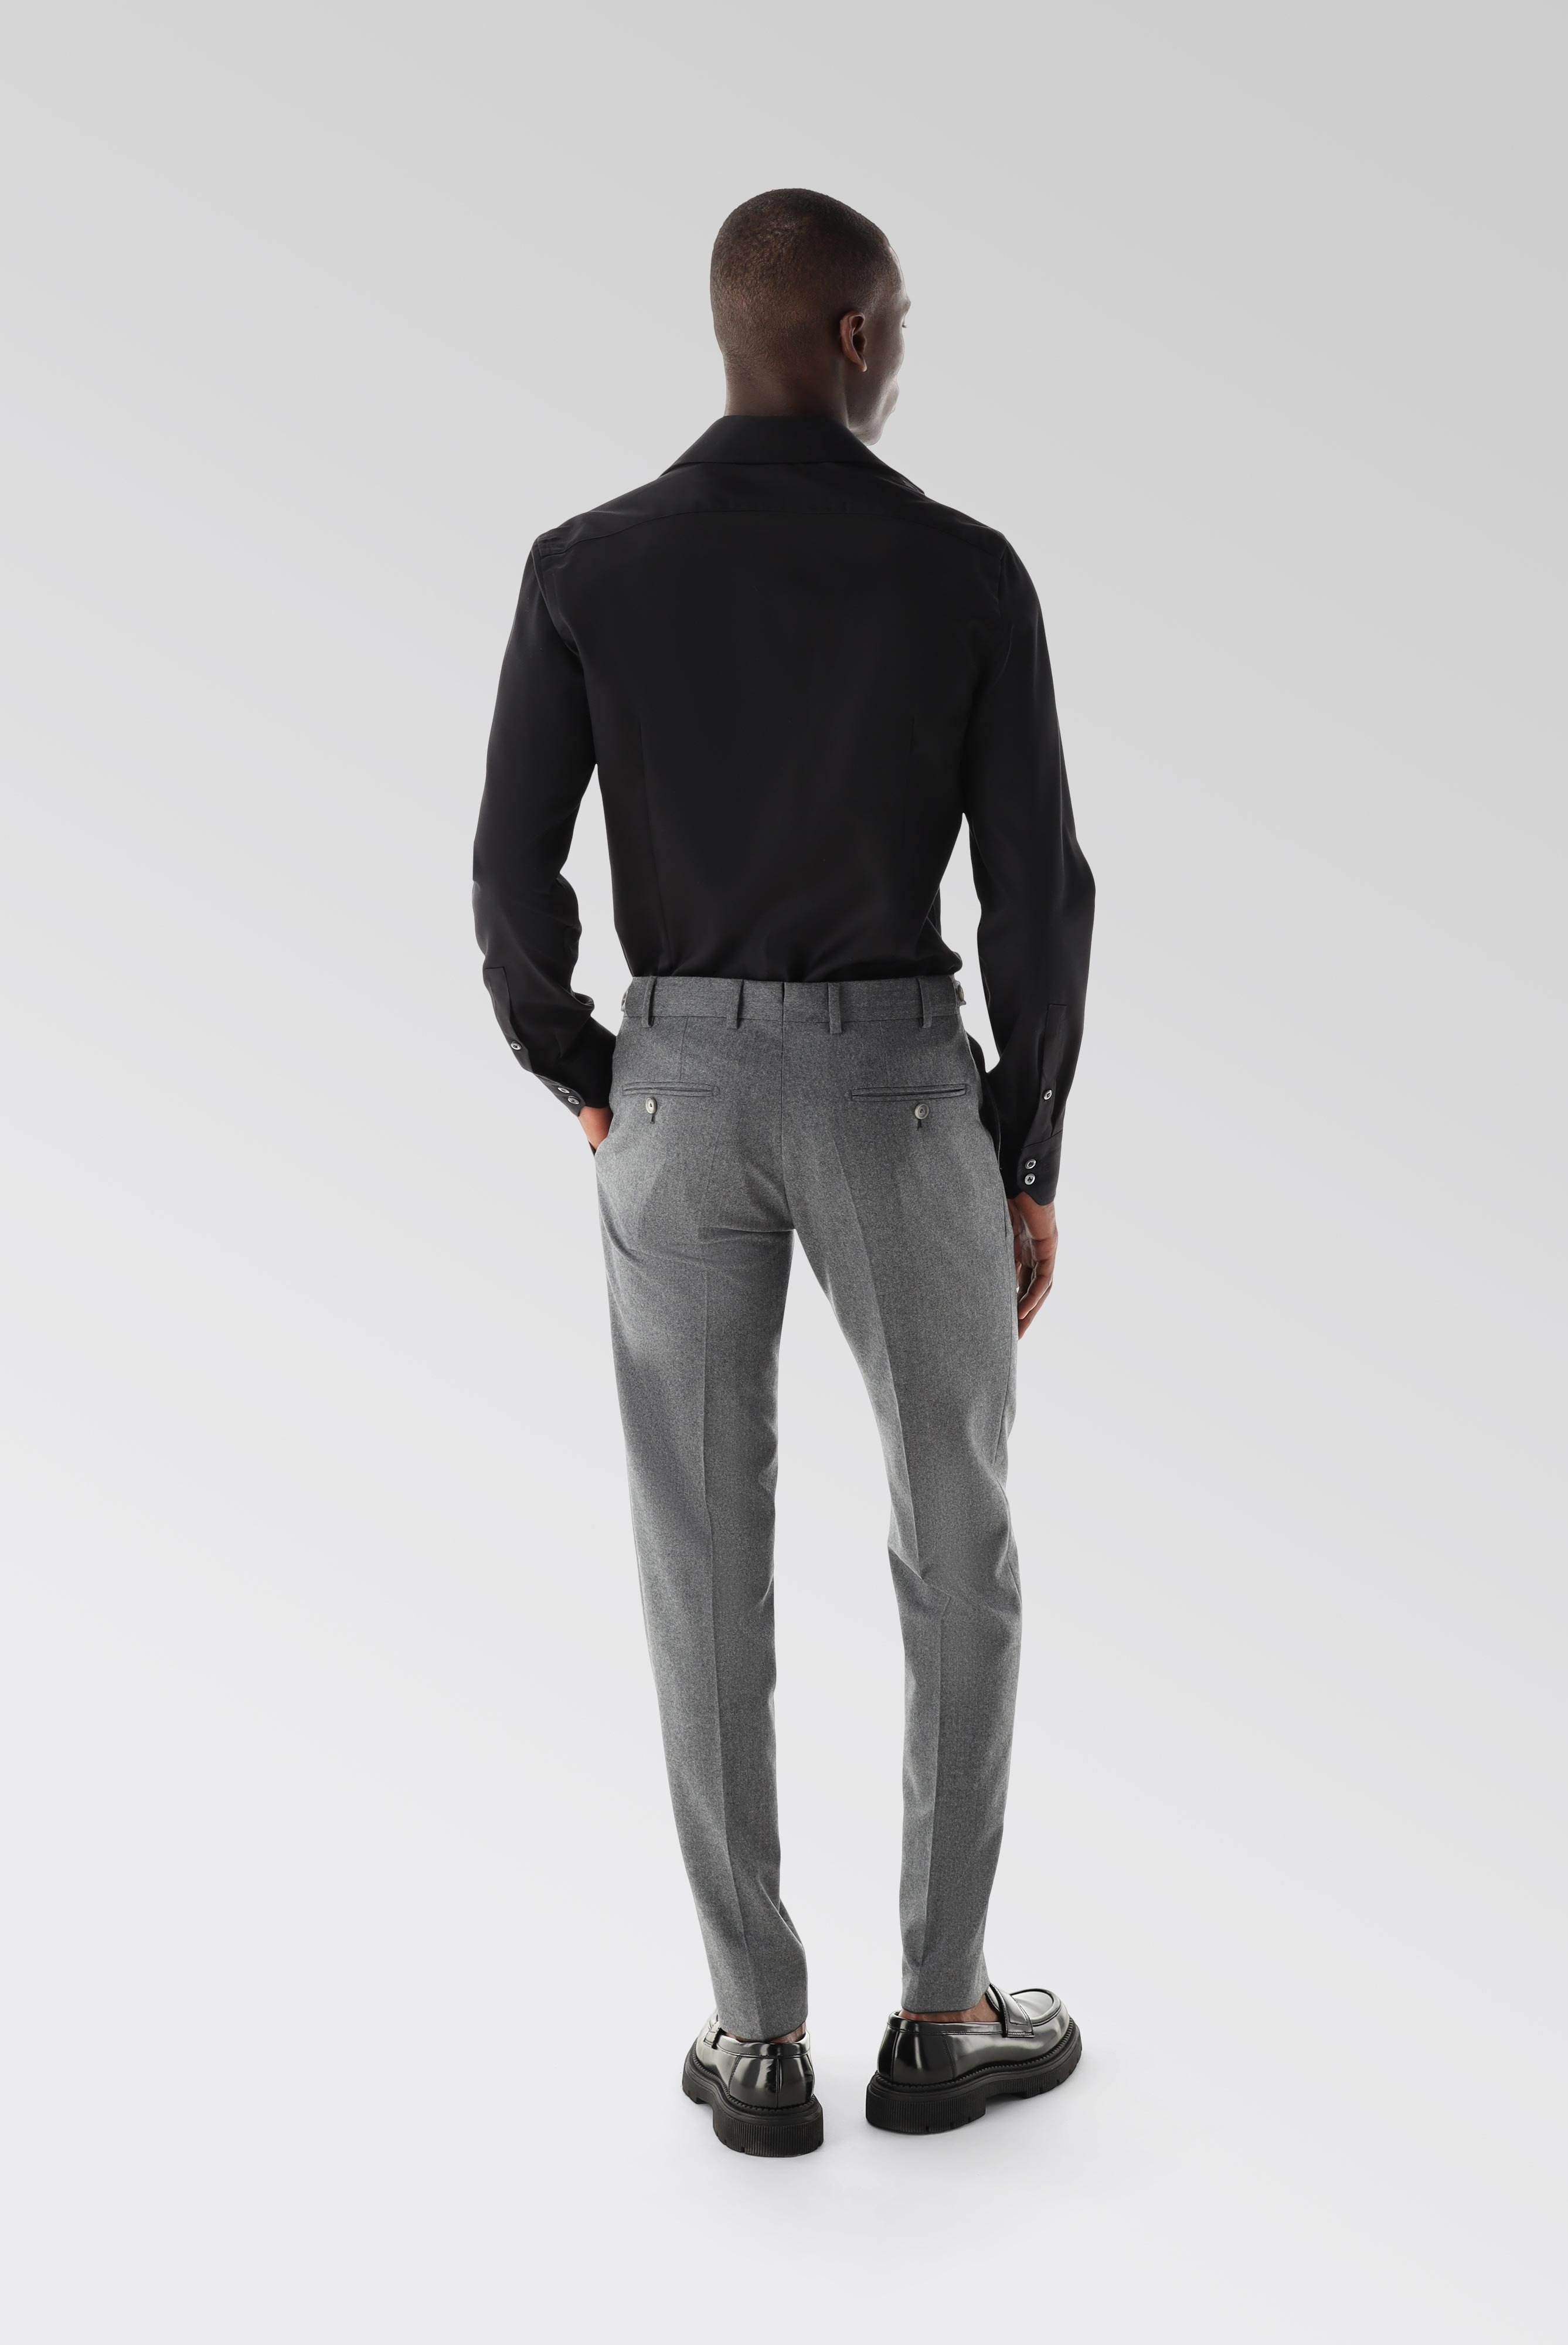 Jeans & Hosen+Hose mit Bundfalte aus Woll-Flanell Slim Fit+20.7854.16.H00029.040.50